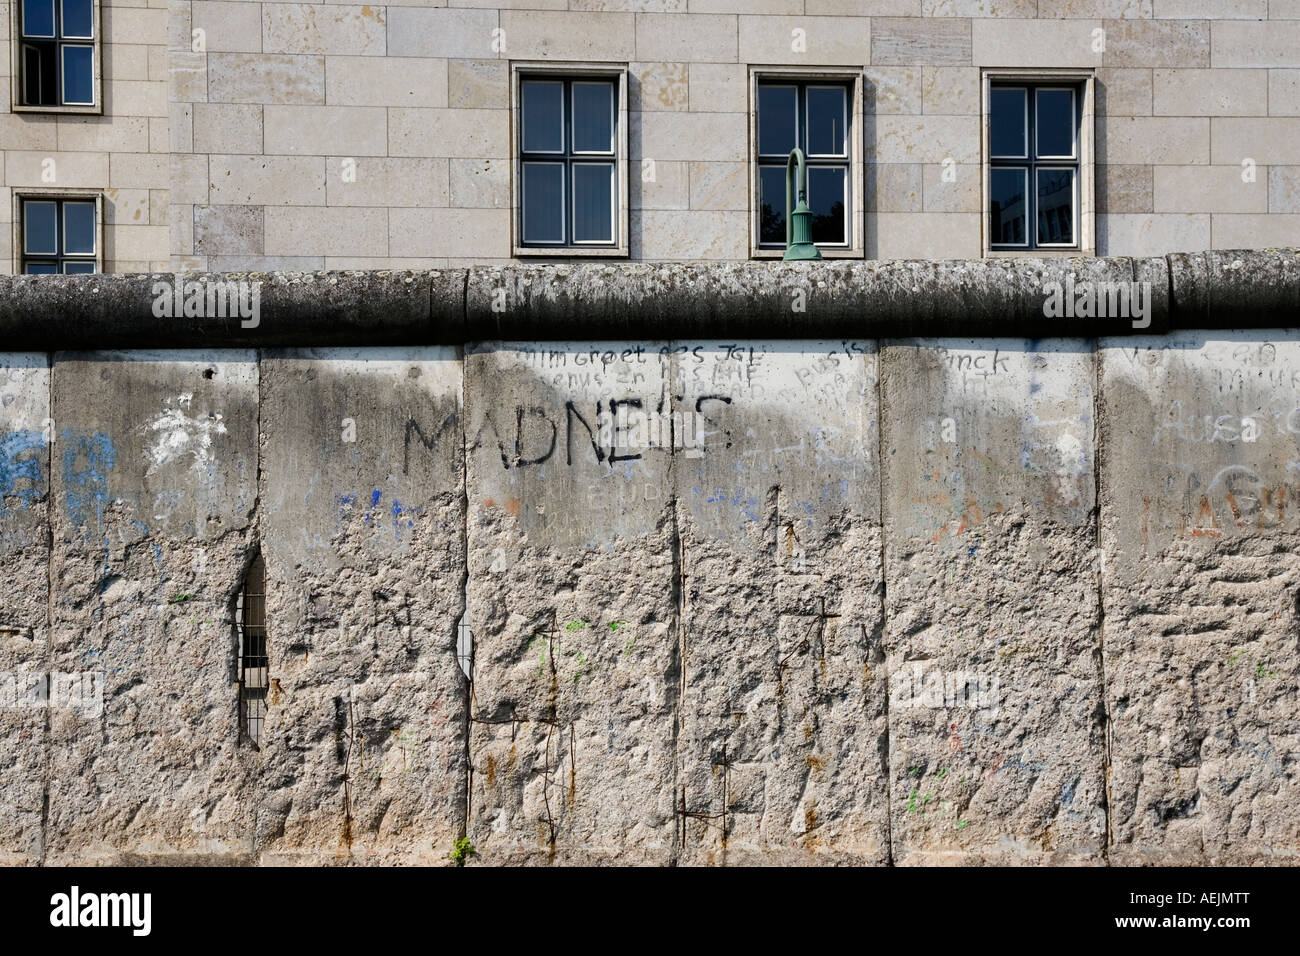 Berlin Wall, Berlin, Germany Stock Photo